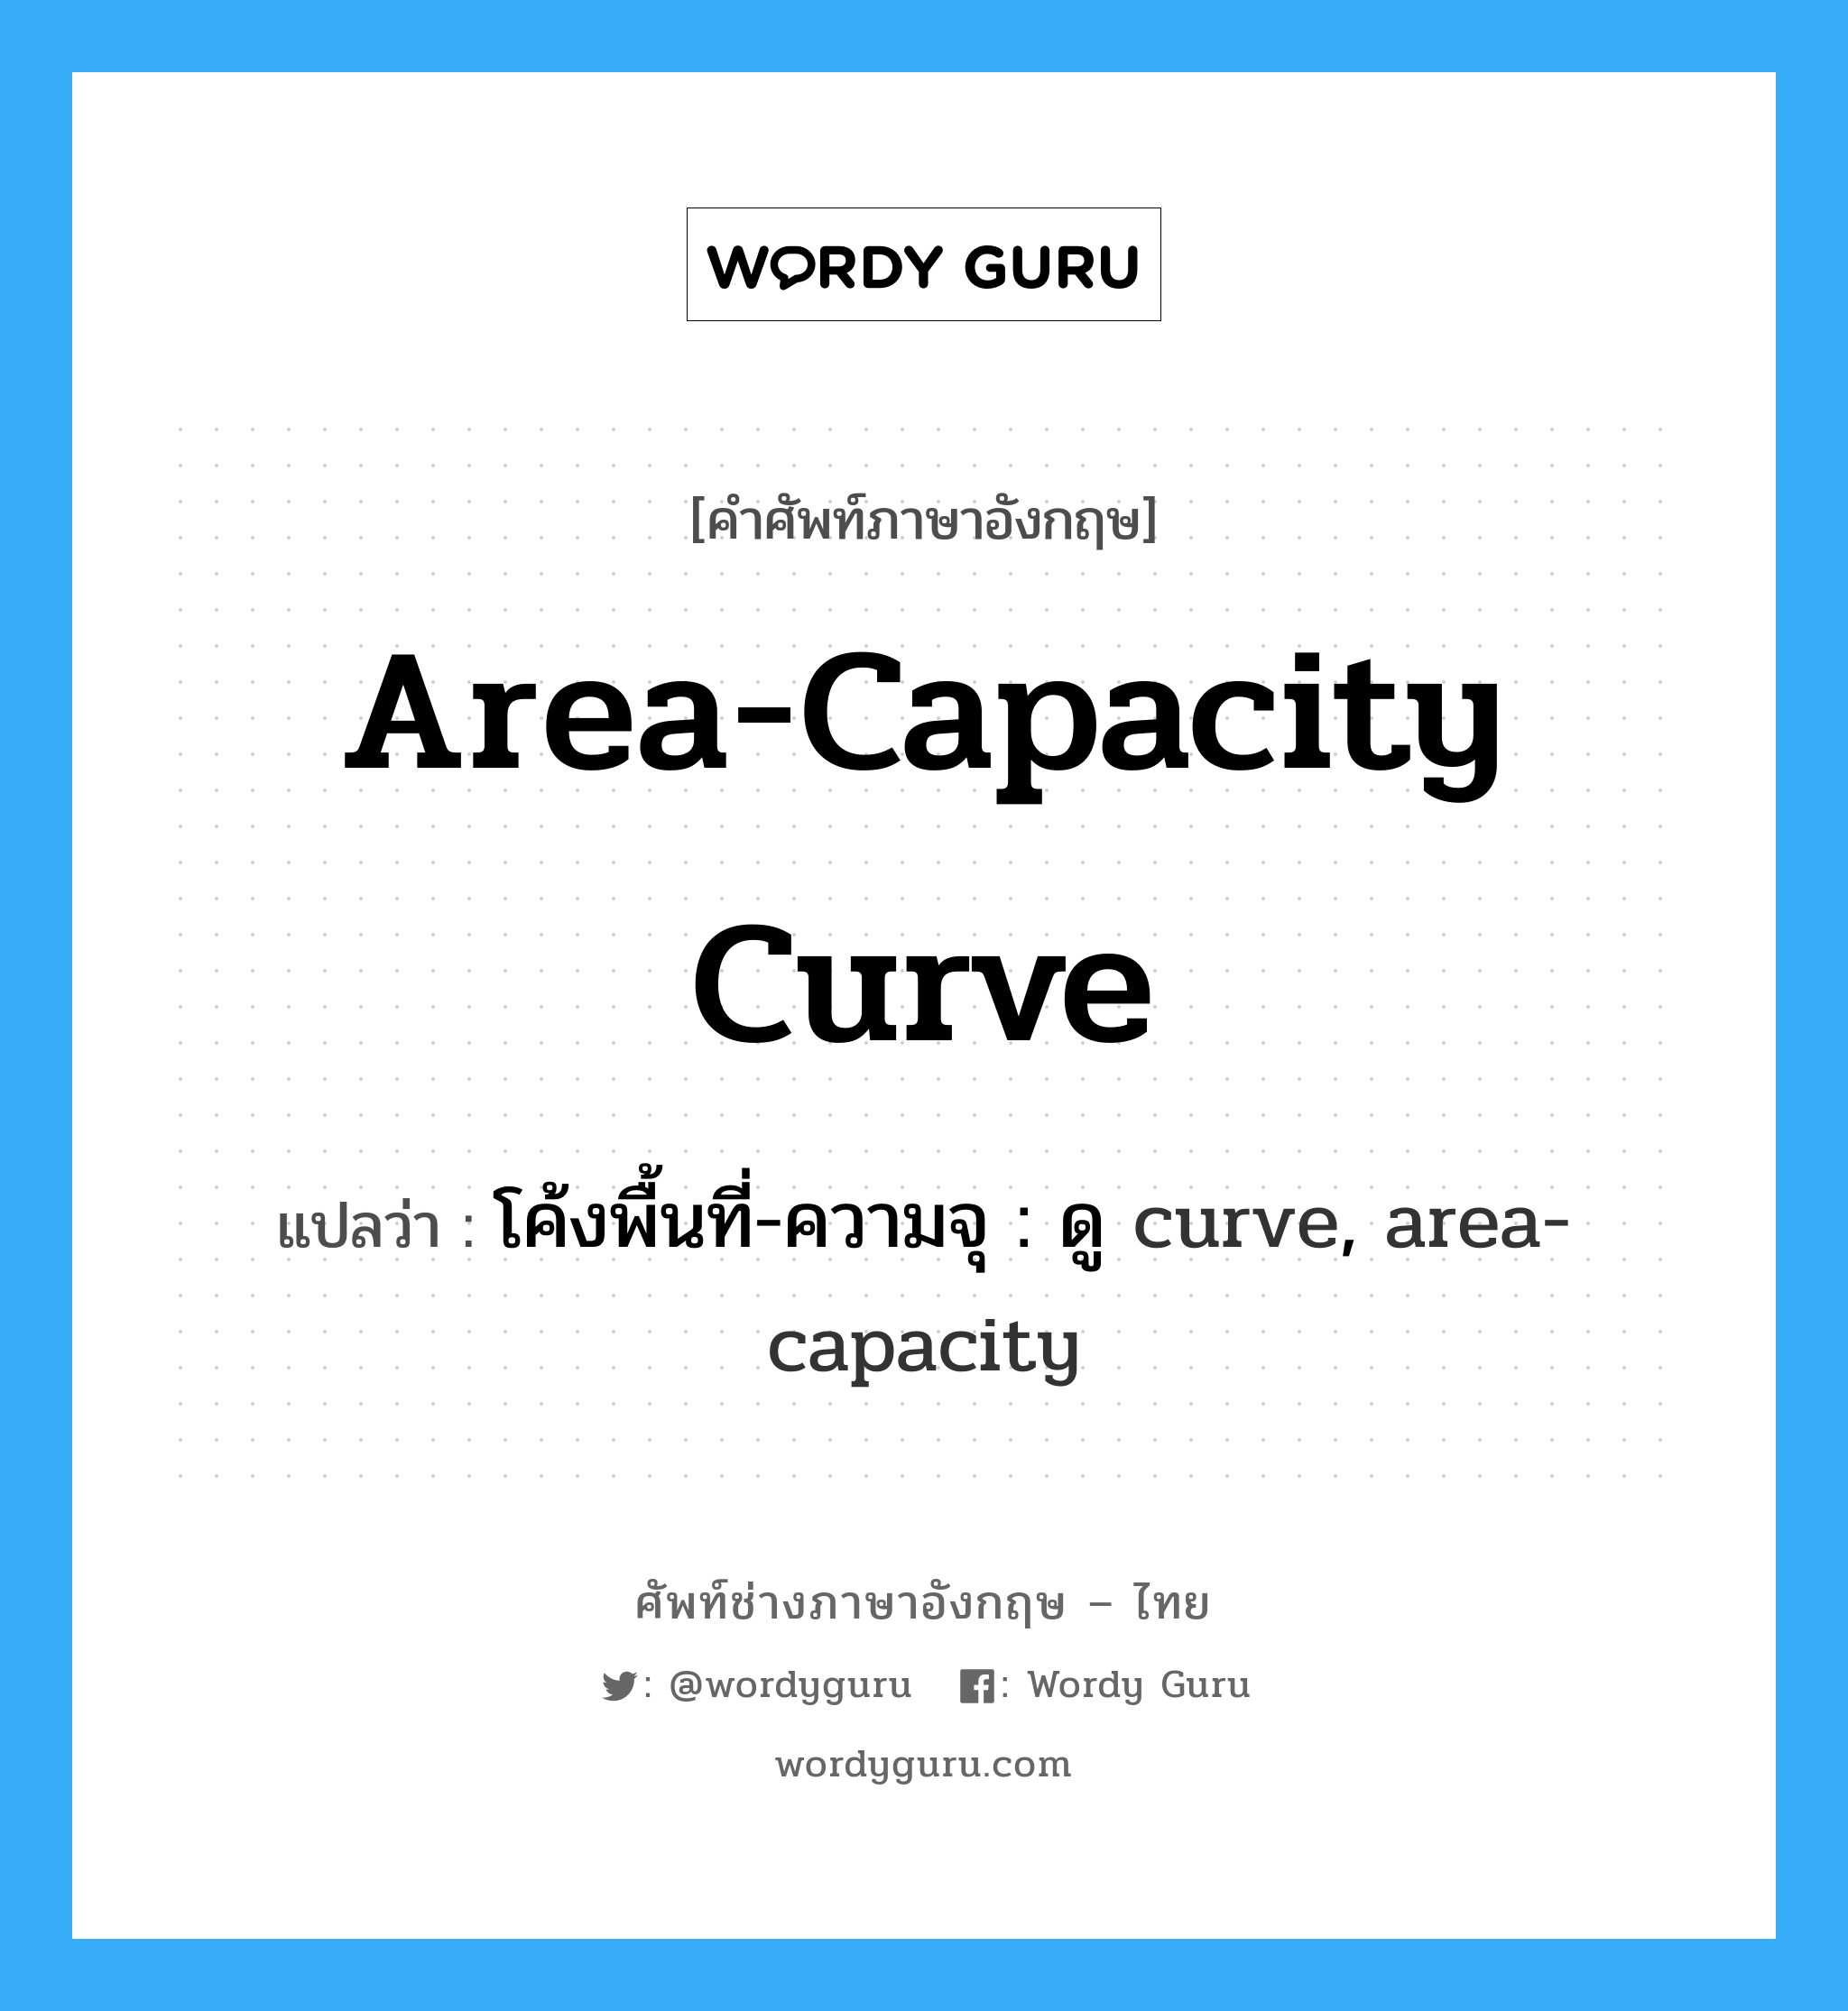 โค้งพื้นที่-ความจุ : ดู curve, area-capacity ภาษาอังกฤษ?, คำศัพท์ช่างภาษาอังกฤษ - ไทย โค้งพื้นที่-ความจุ : ดู curve, area-capacity คำศัพท์ภาษาอังกฤษ โค้งพื้นที่-ความจุ : ดู curve, area-capacity แปลว่า area-capacity curve